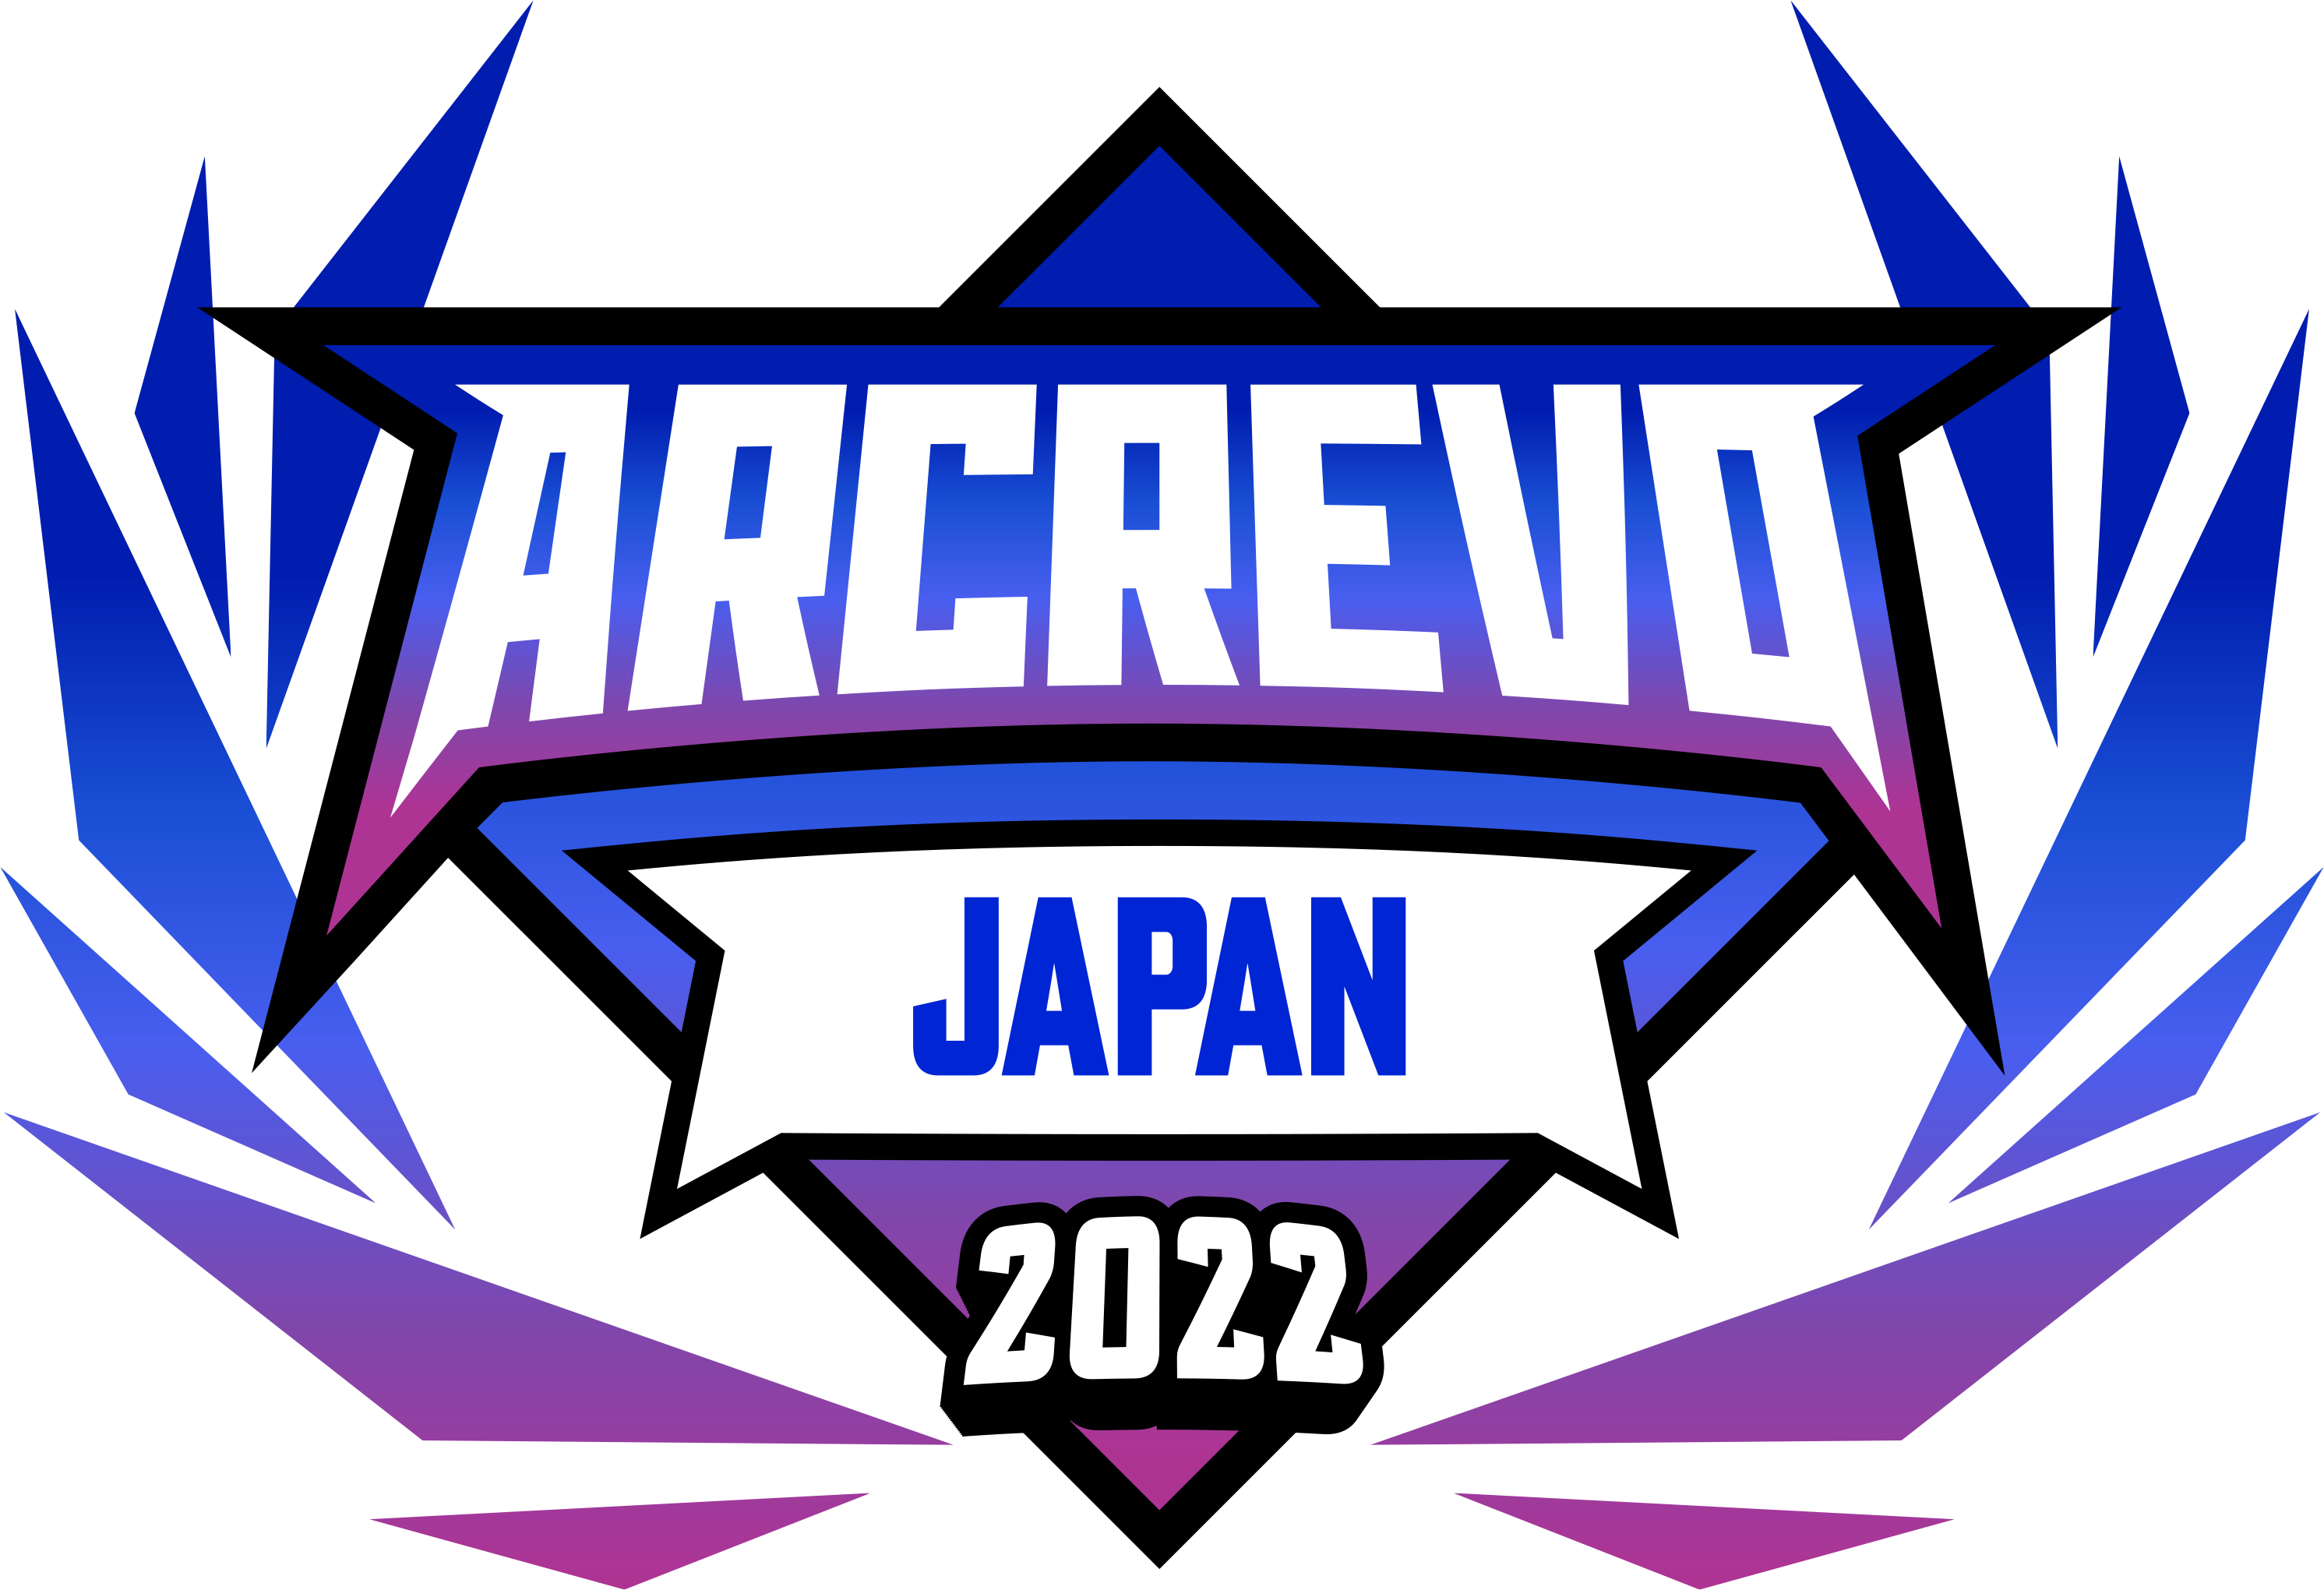 ARCREVO Japan 2022